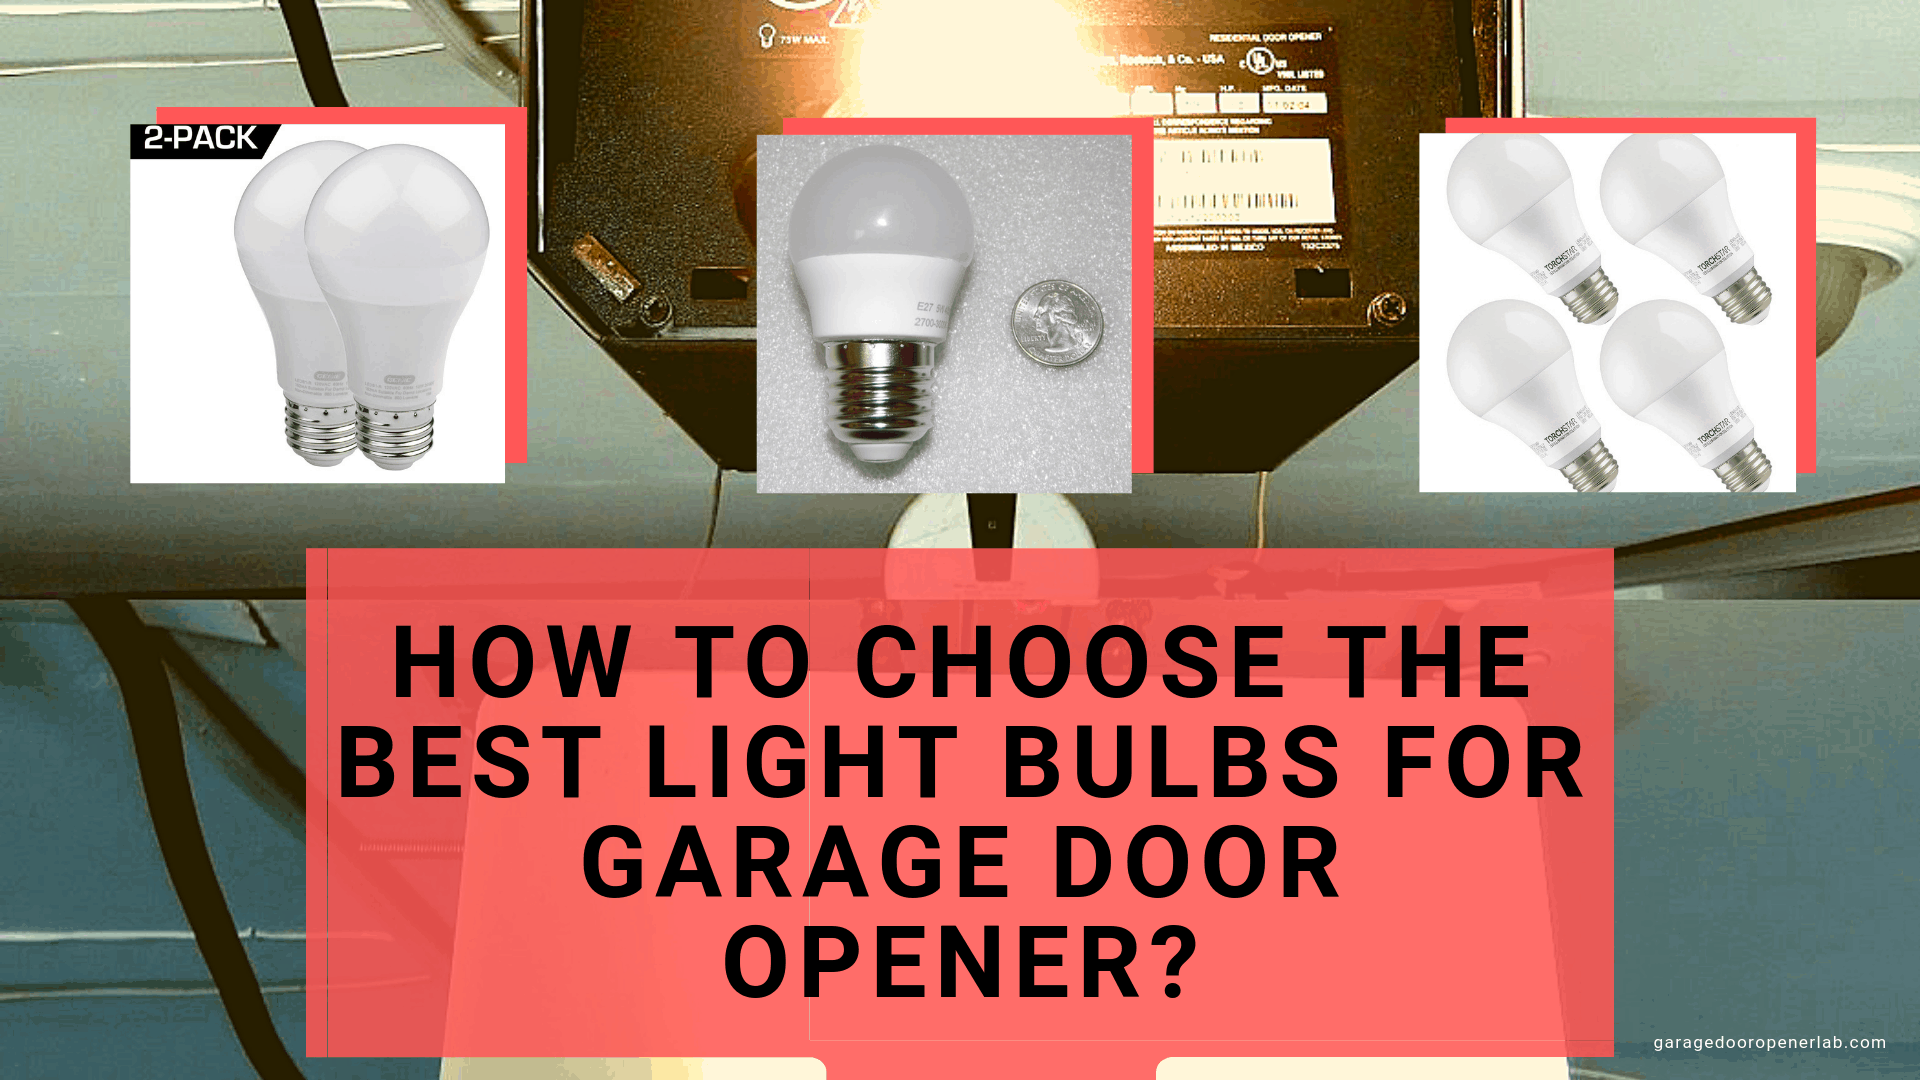 5 Best Light Bulbs For Garage Door Opener Best Garage Door Openers In 2020 Buying Guides